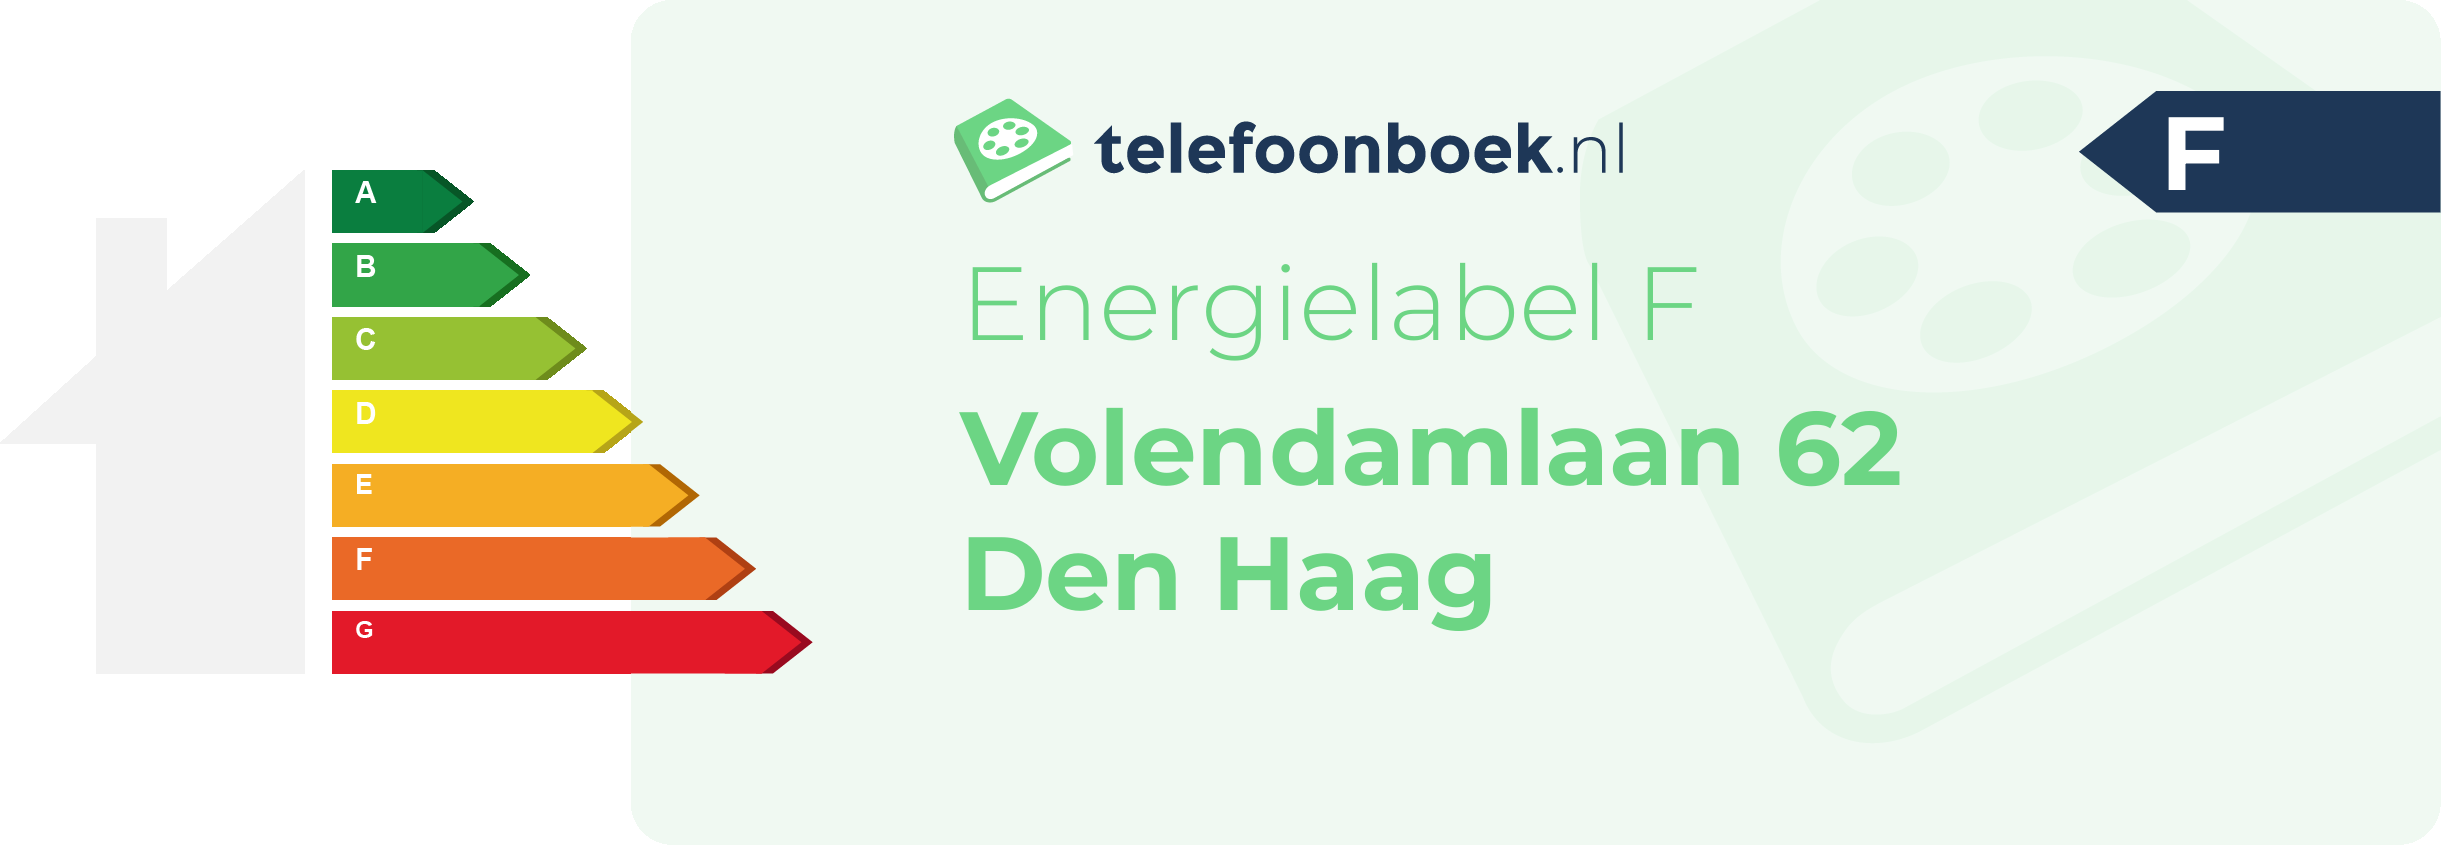 Energielabel Volendamlaan 62 Den Haag